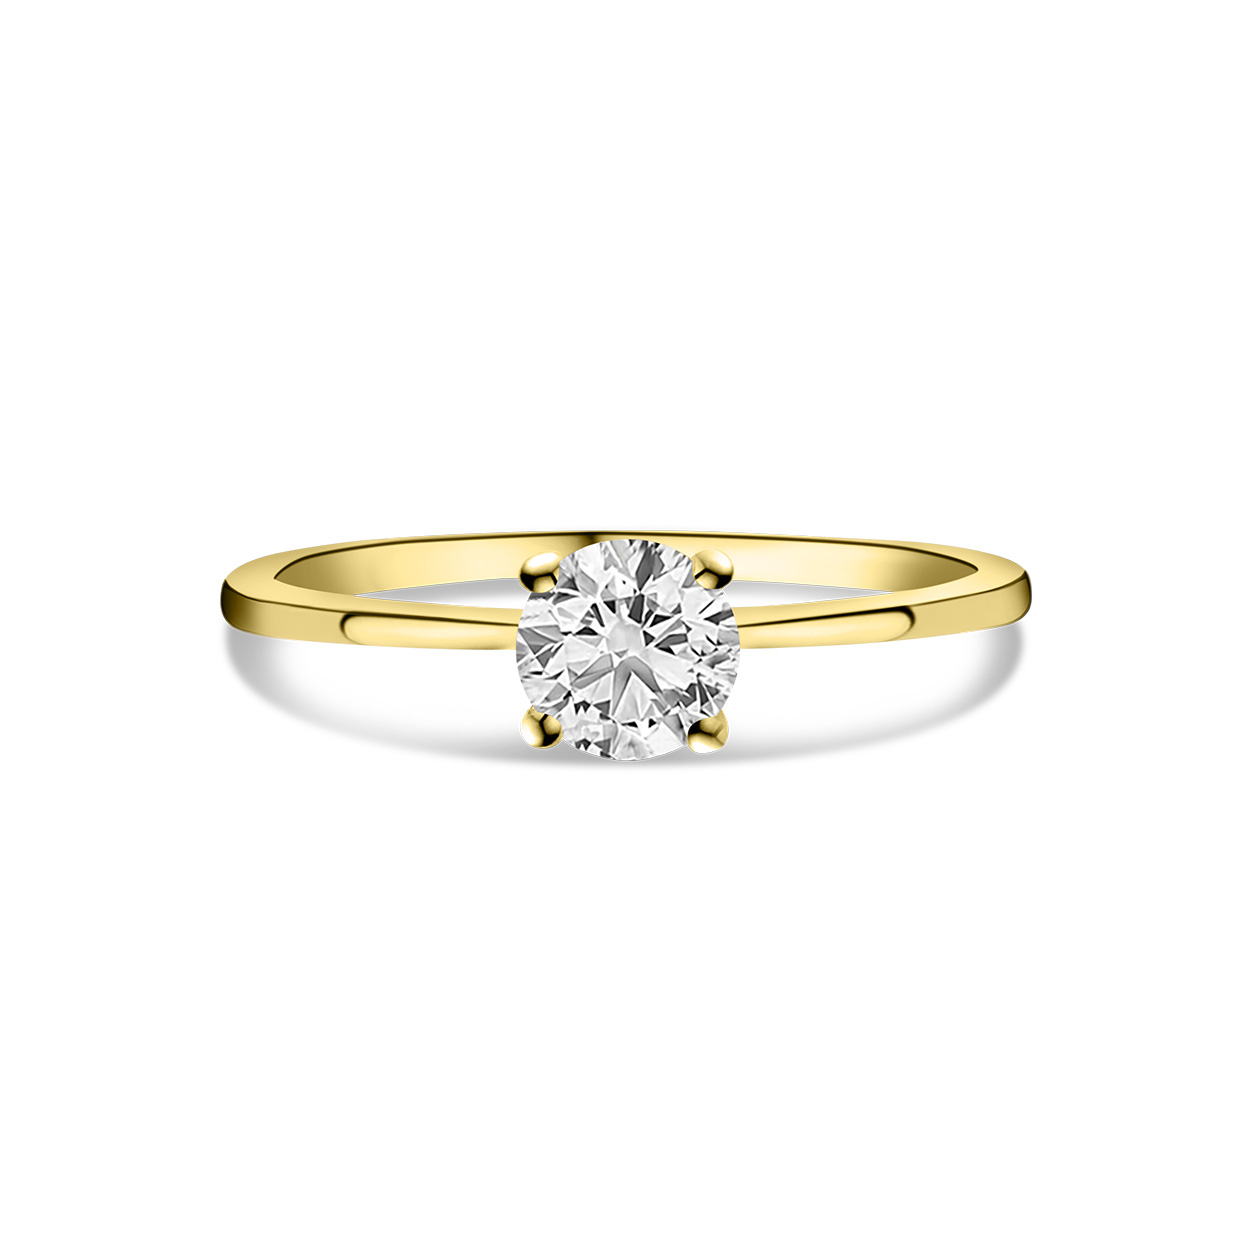 Geelgouden ring solitair met lab grown diamant R159-R23MK0004-LG-070-Y